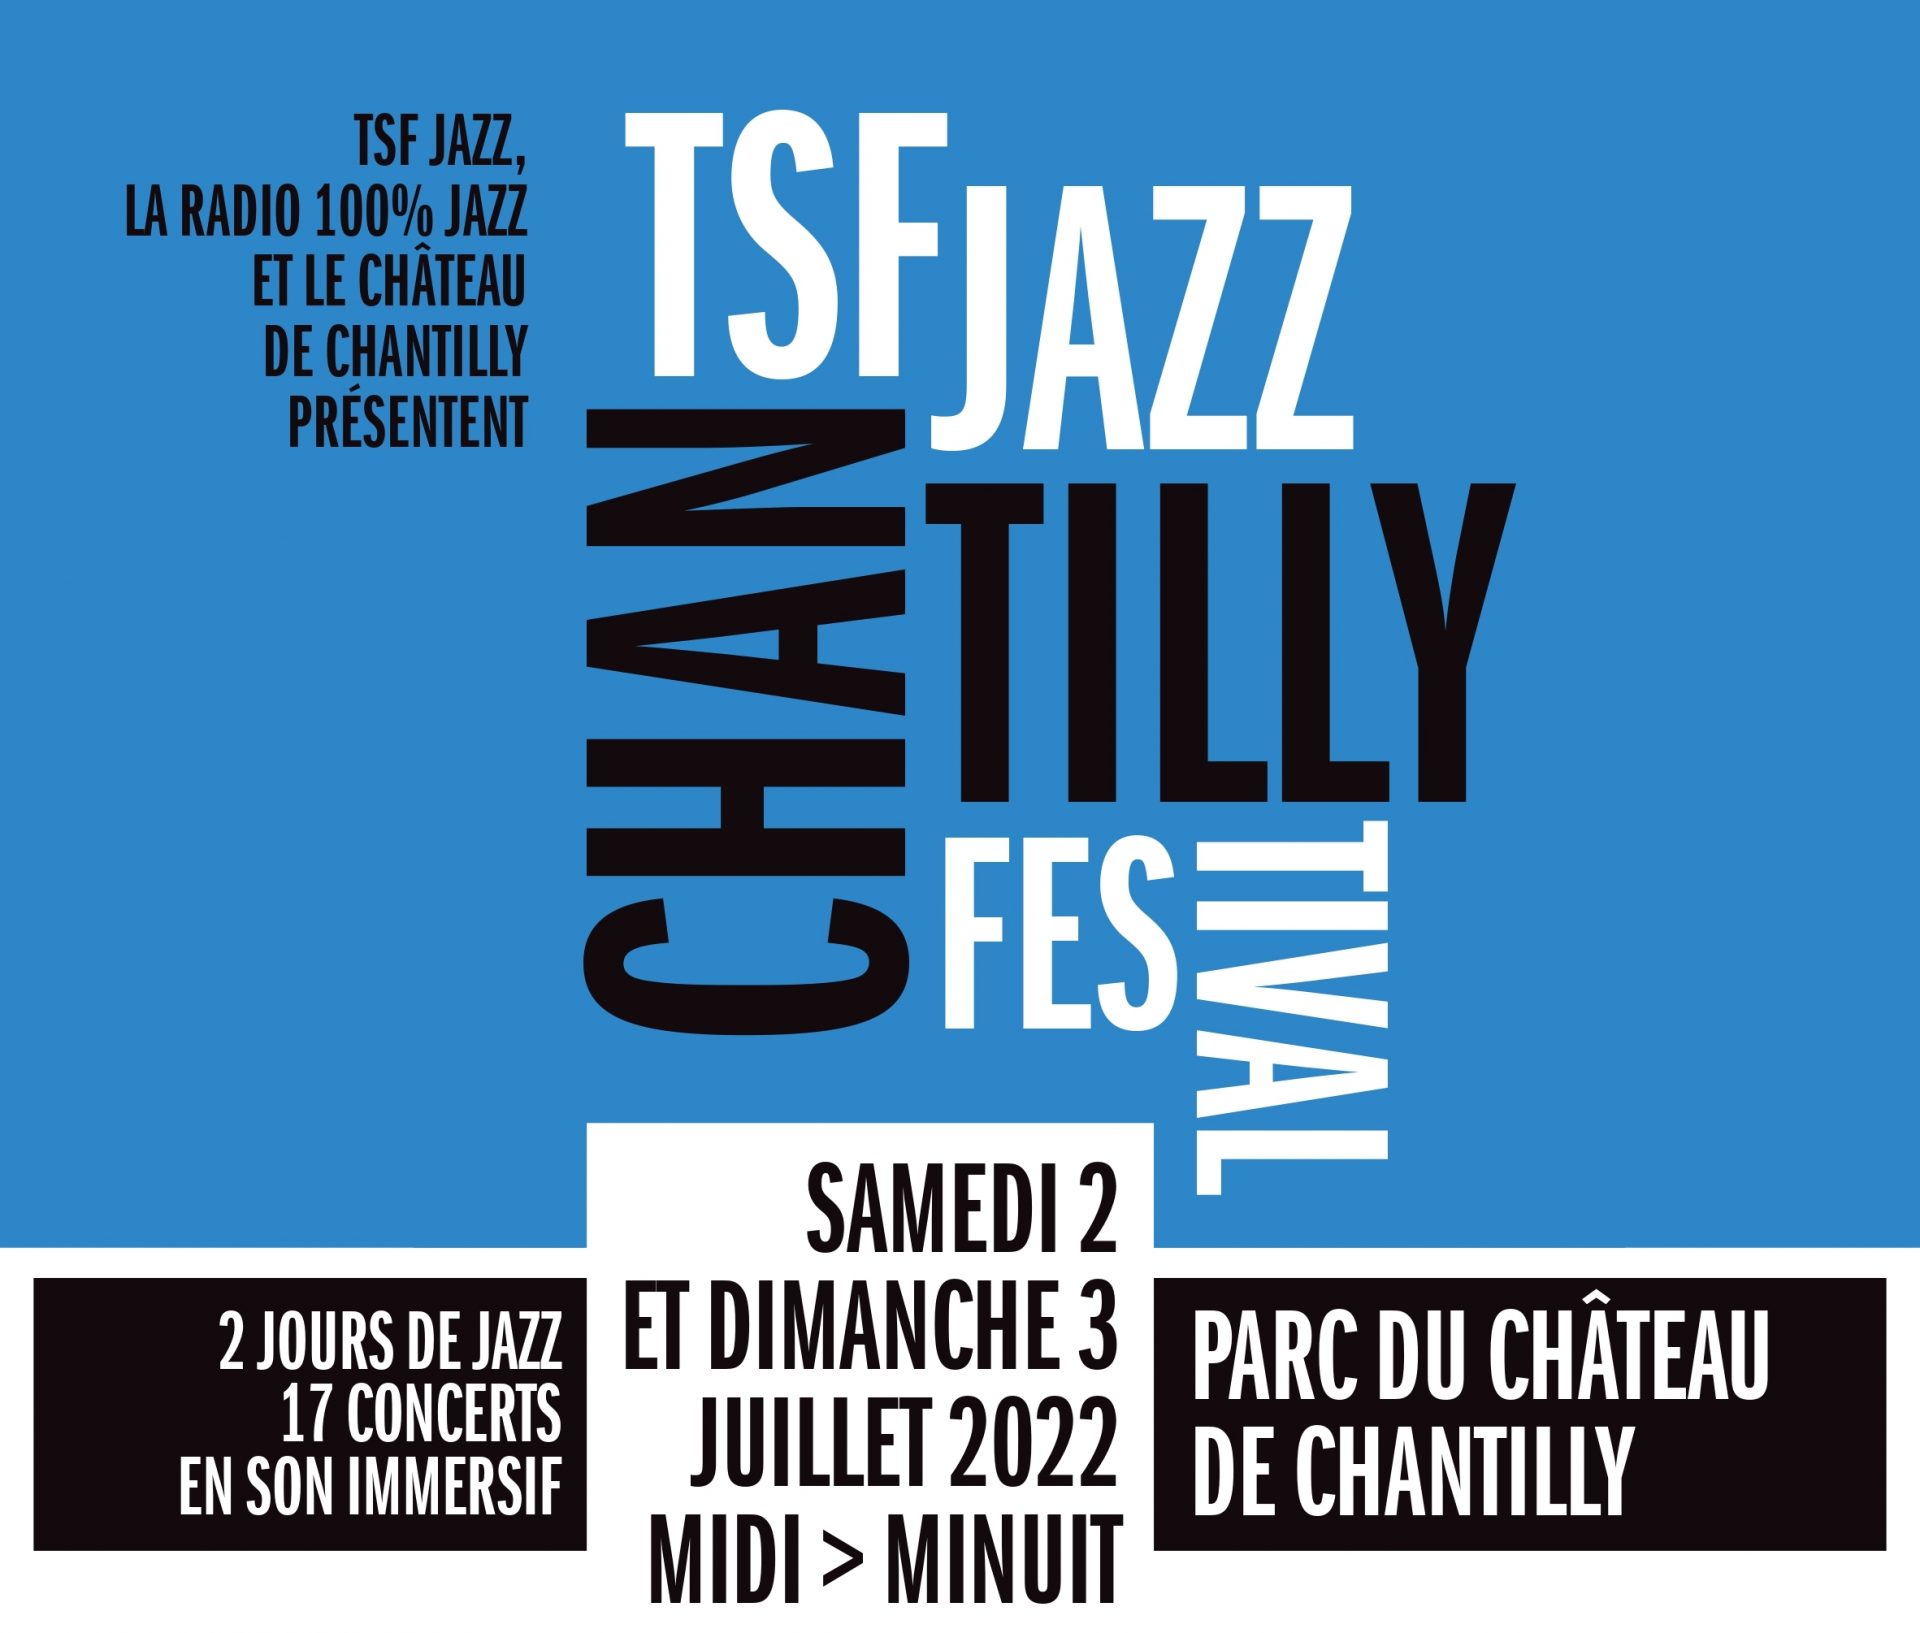 TSF J CHANTILLY haut TSF Jazz Chantilly : Une première édition de toute beauté